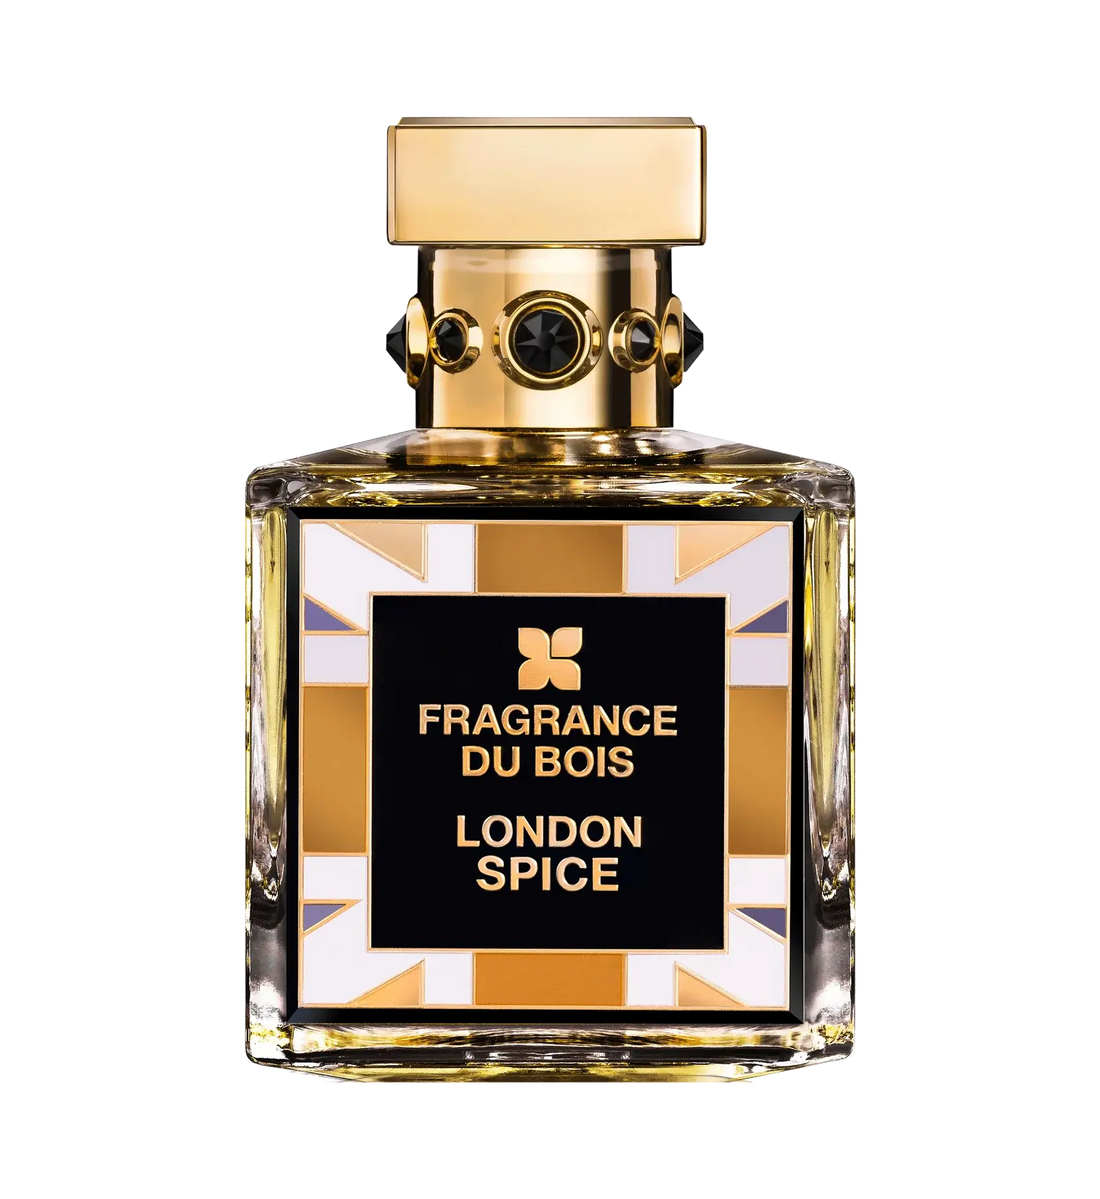 Fragrance du bois 伦敦香料香水 - 100 毫升